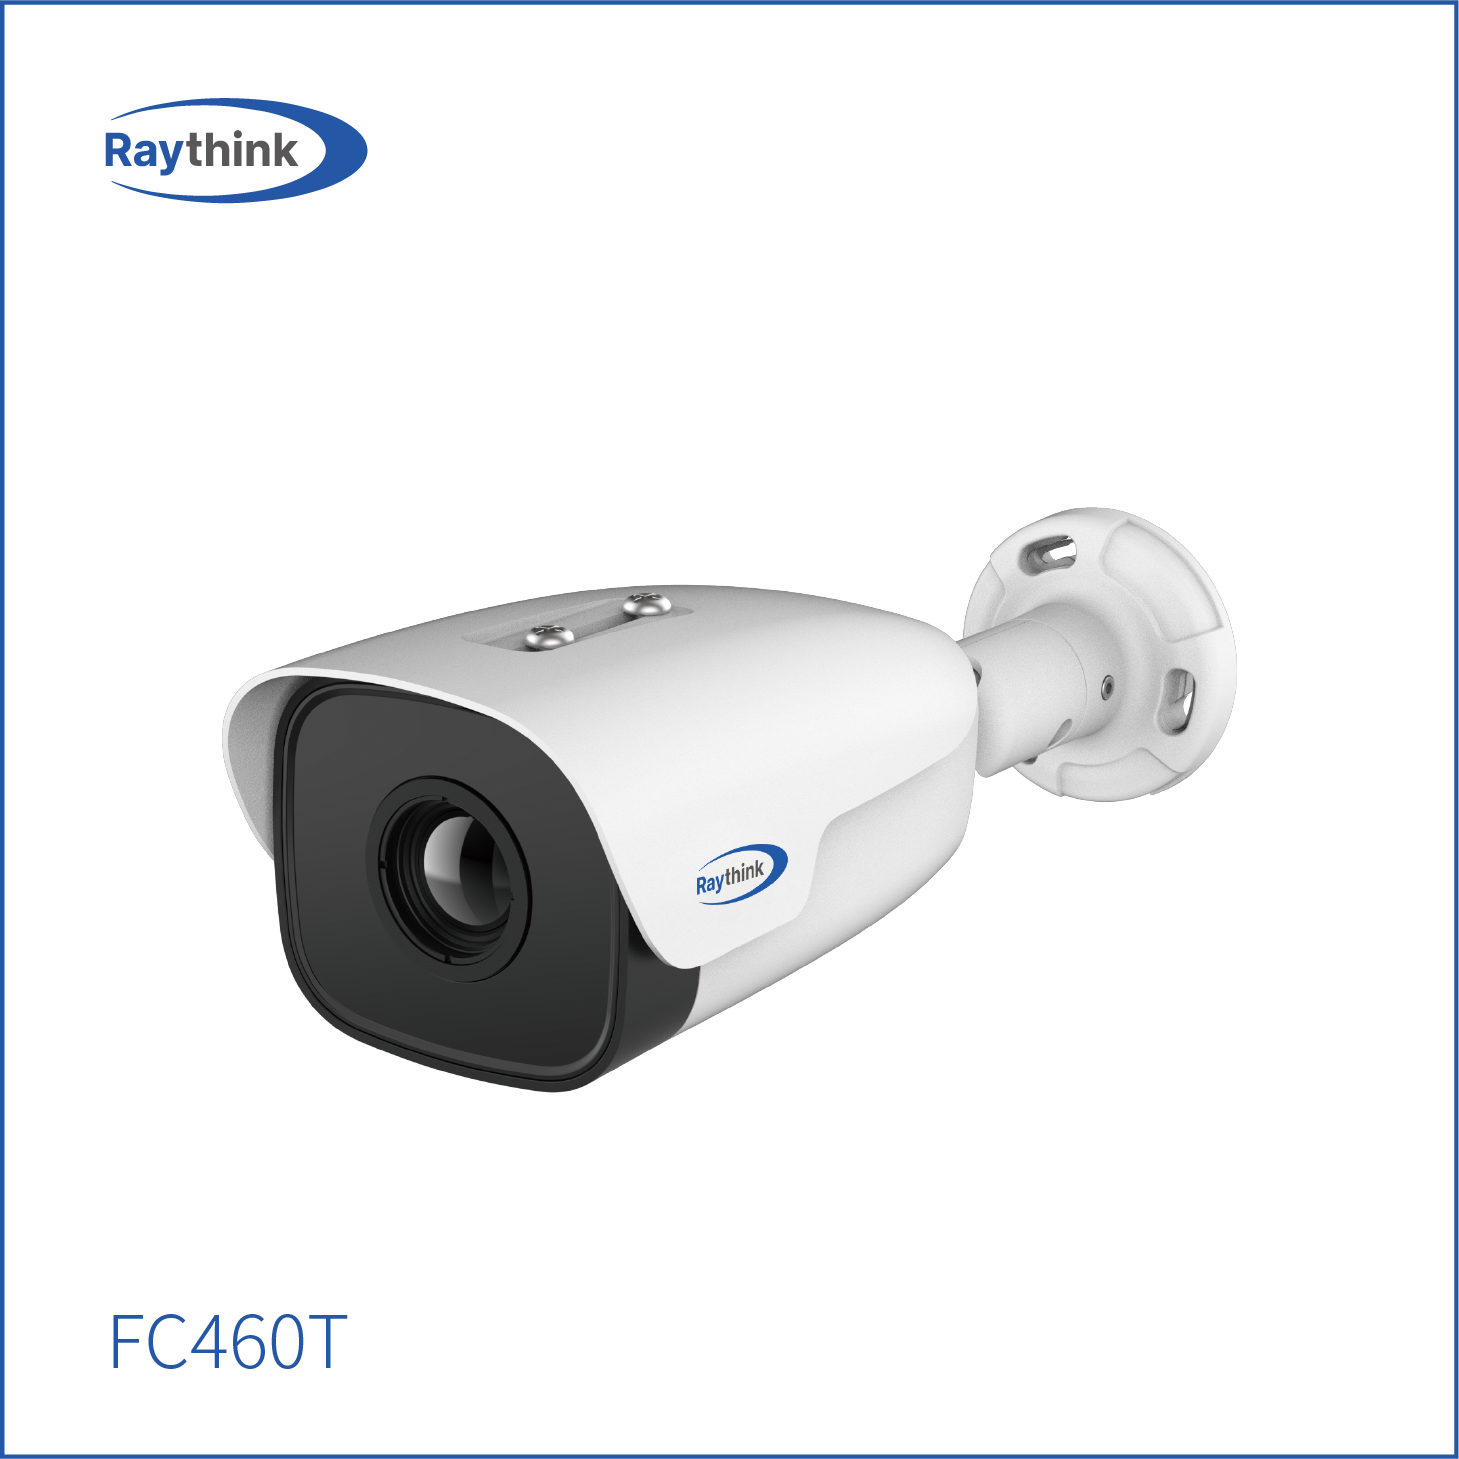 热成像筒型摄像机FC460T 